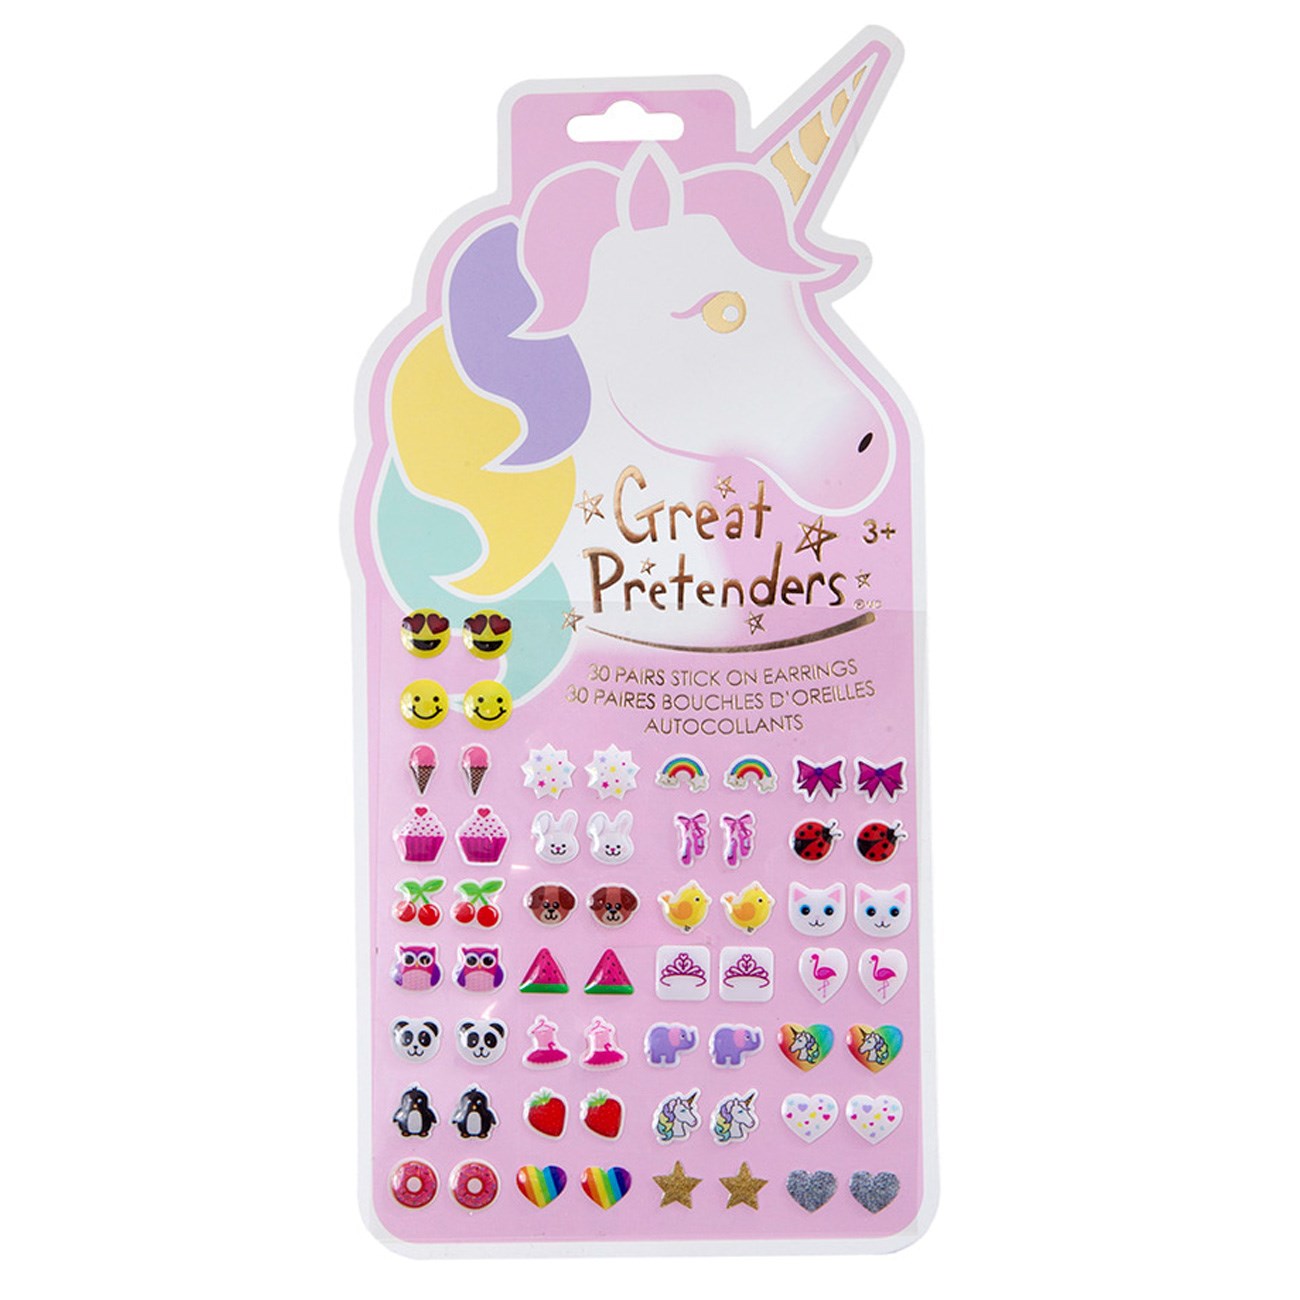 Great Pretenders Unicorn Stick on Earrings